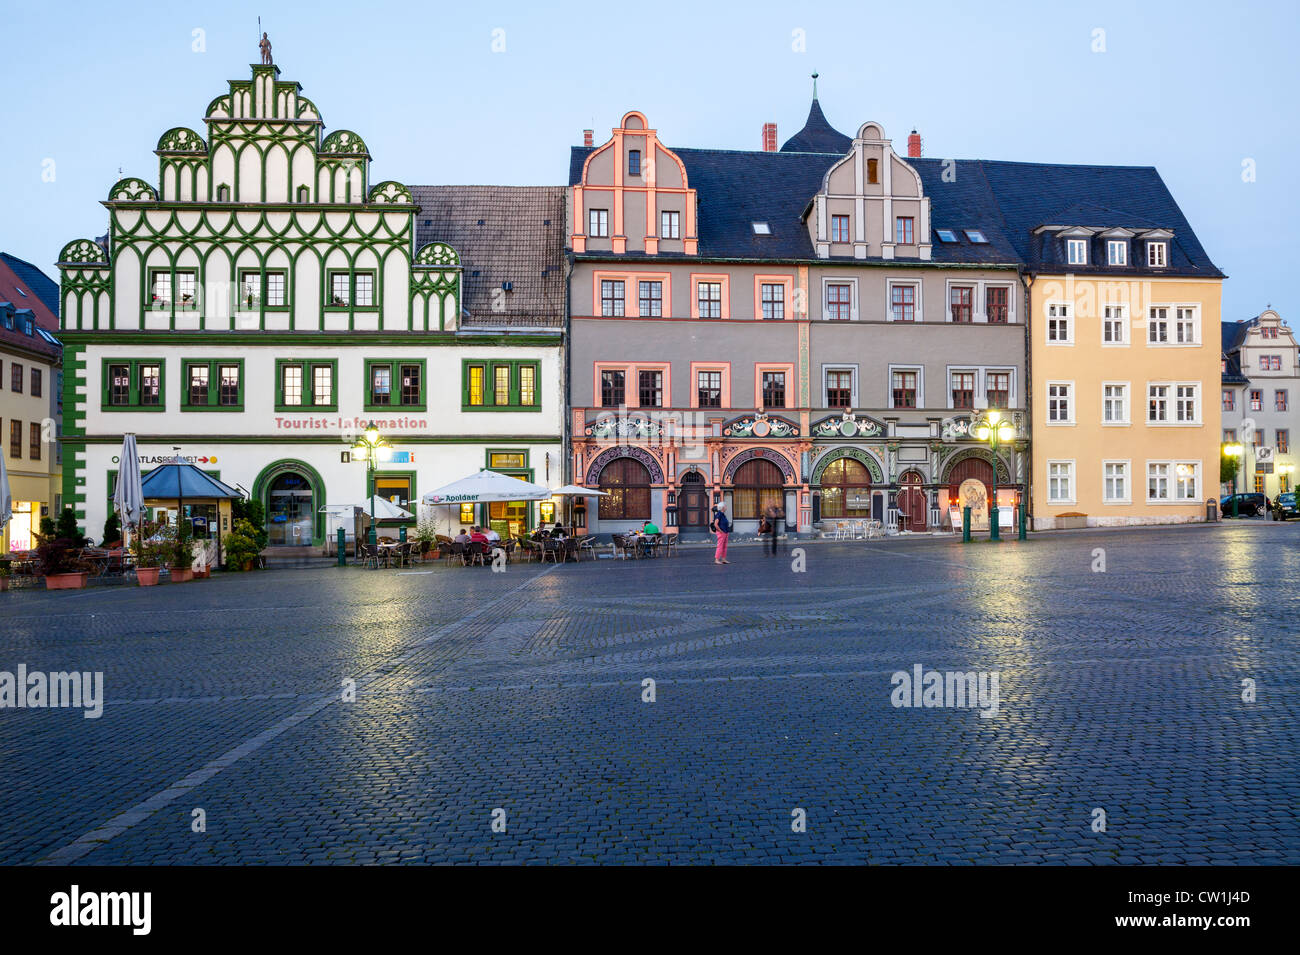 Marktplatz, Weimar, Turingia, Germania Foto Stock